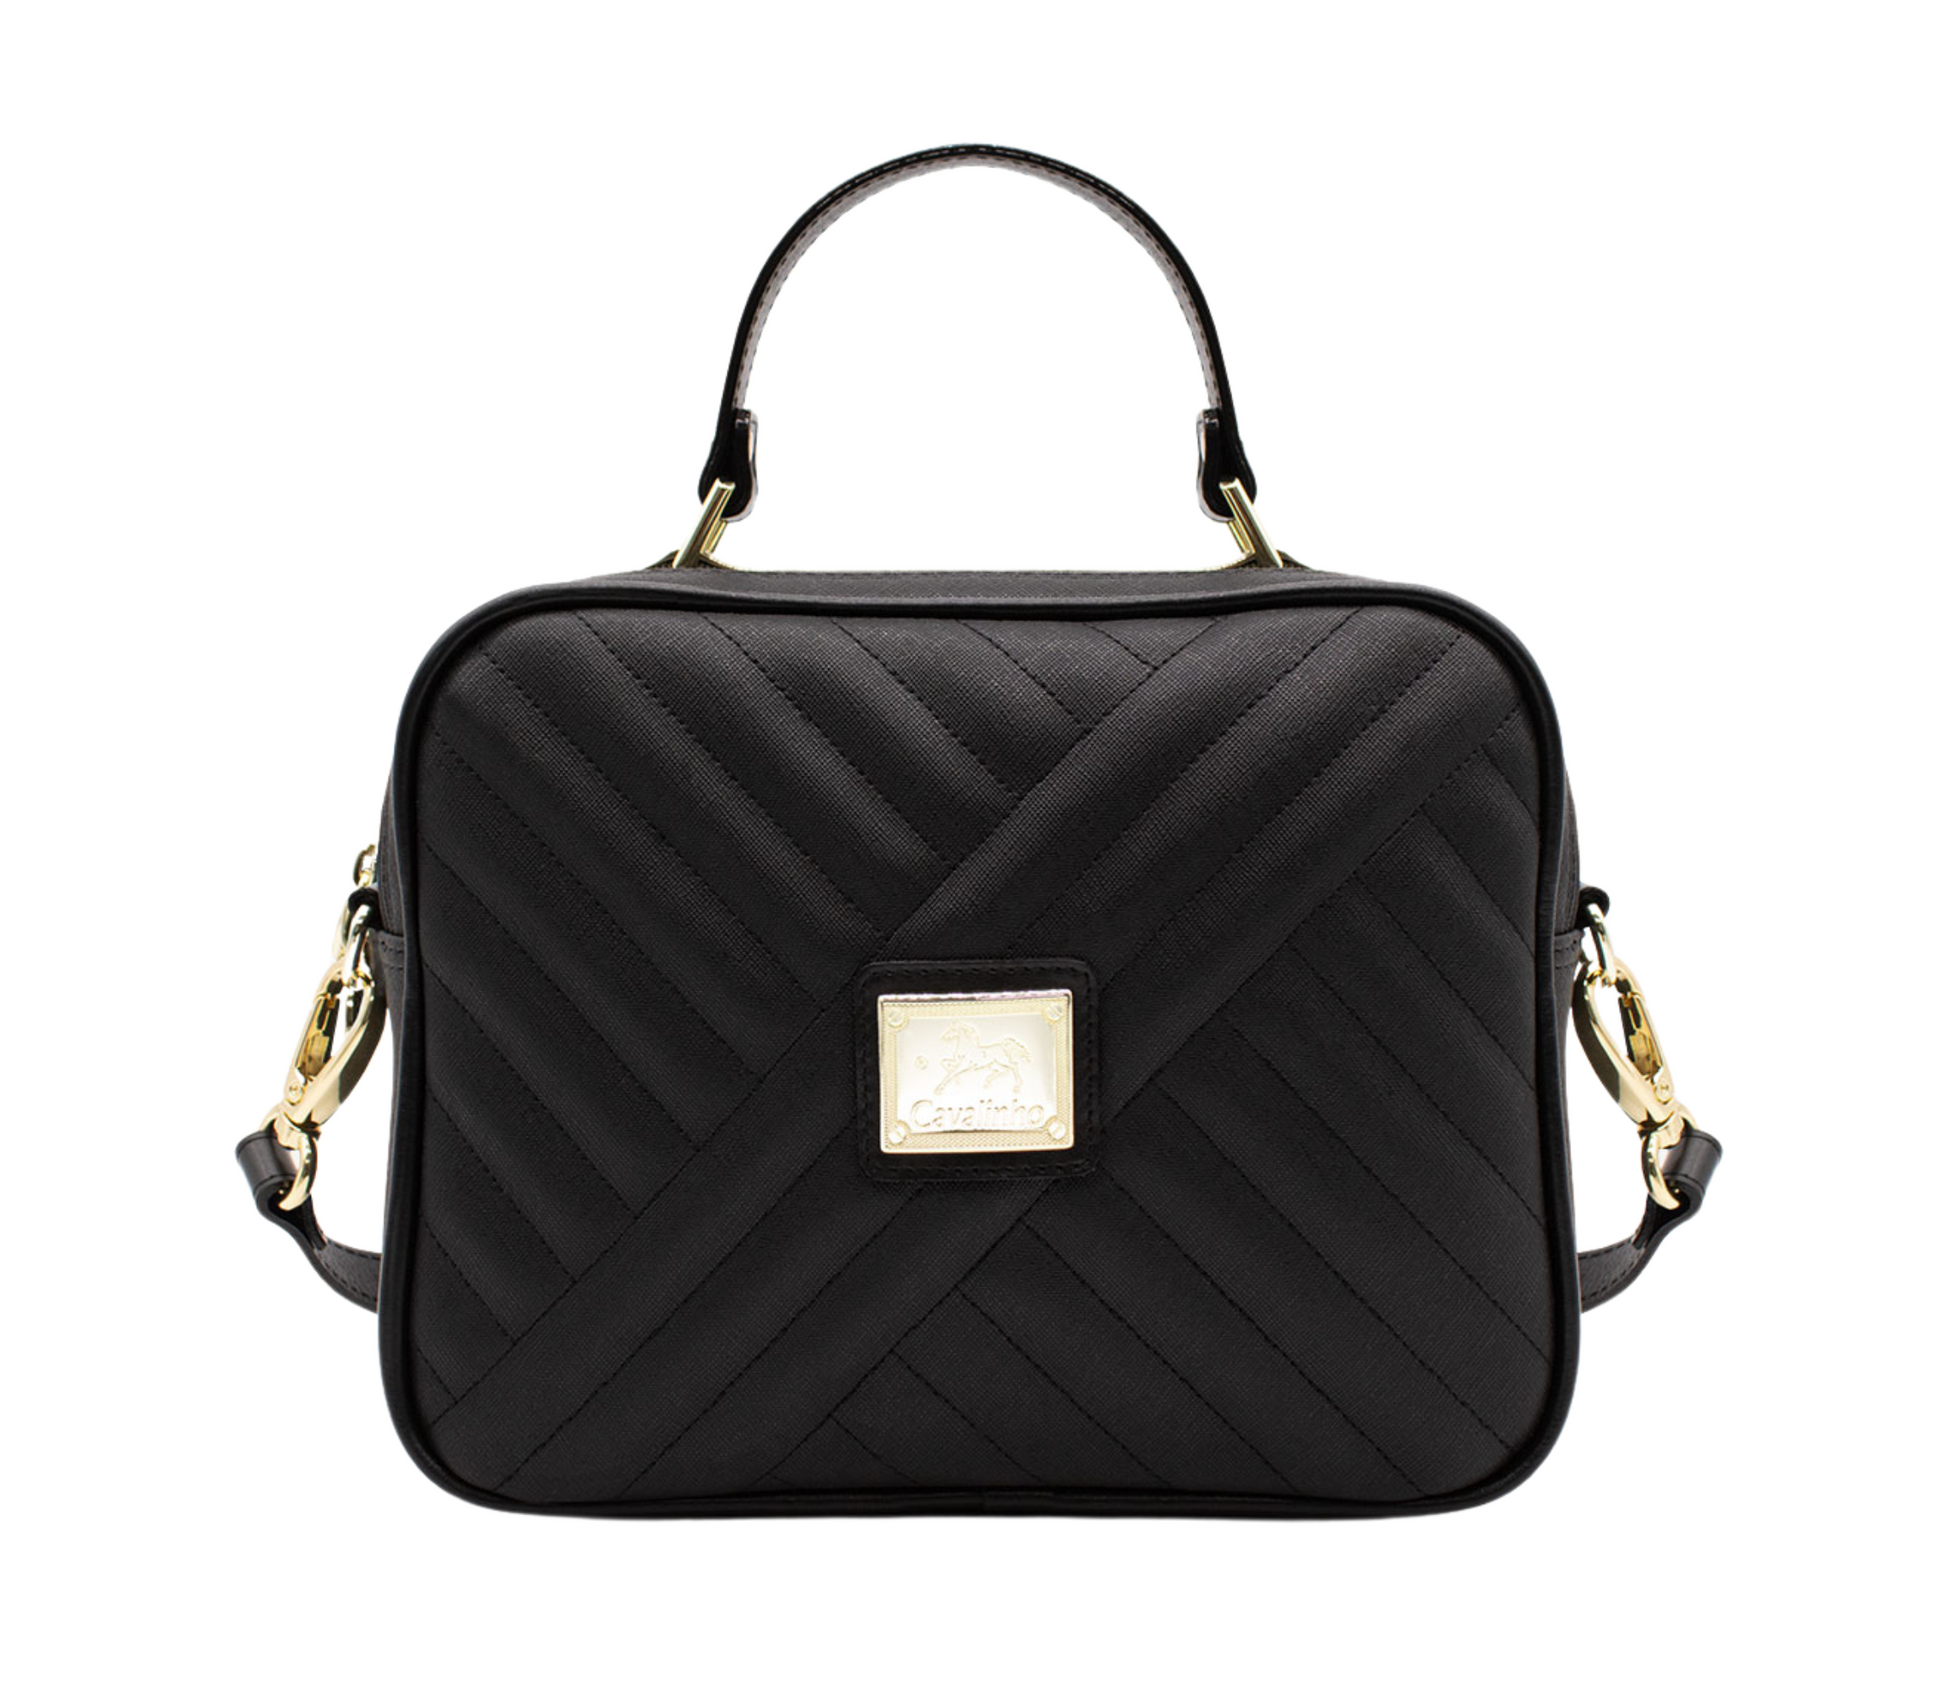 Cavalinho Charming Handbag - Black - 18470186.01_P01